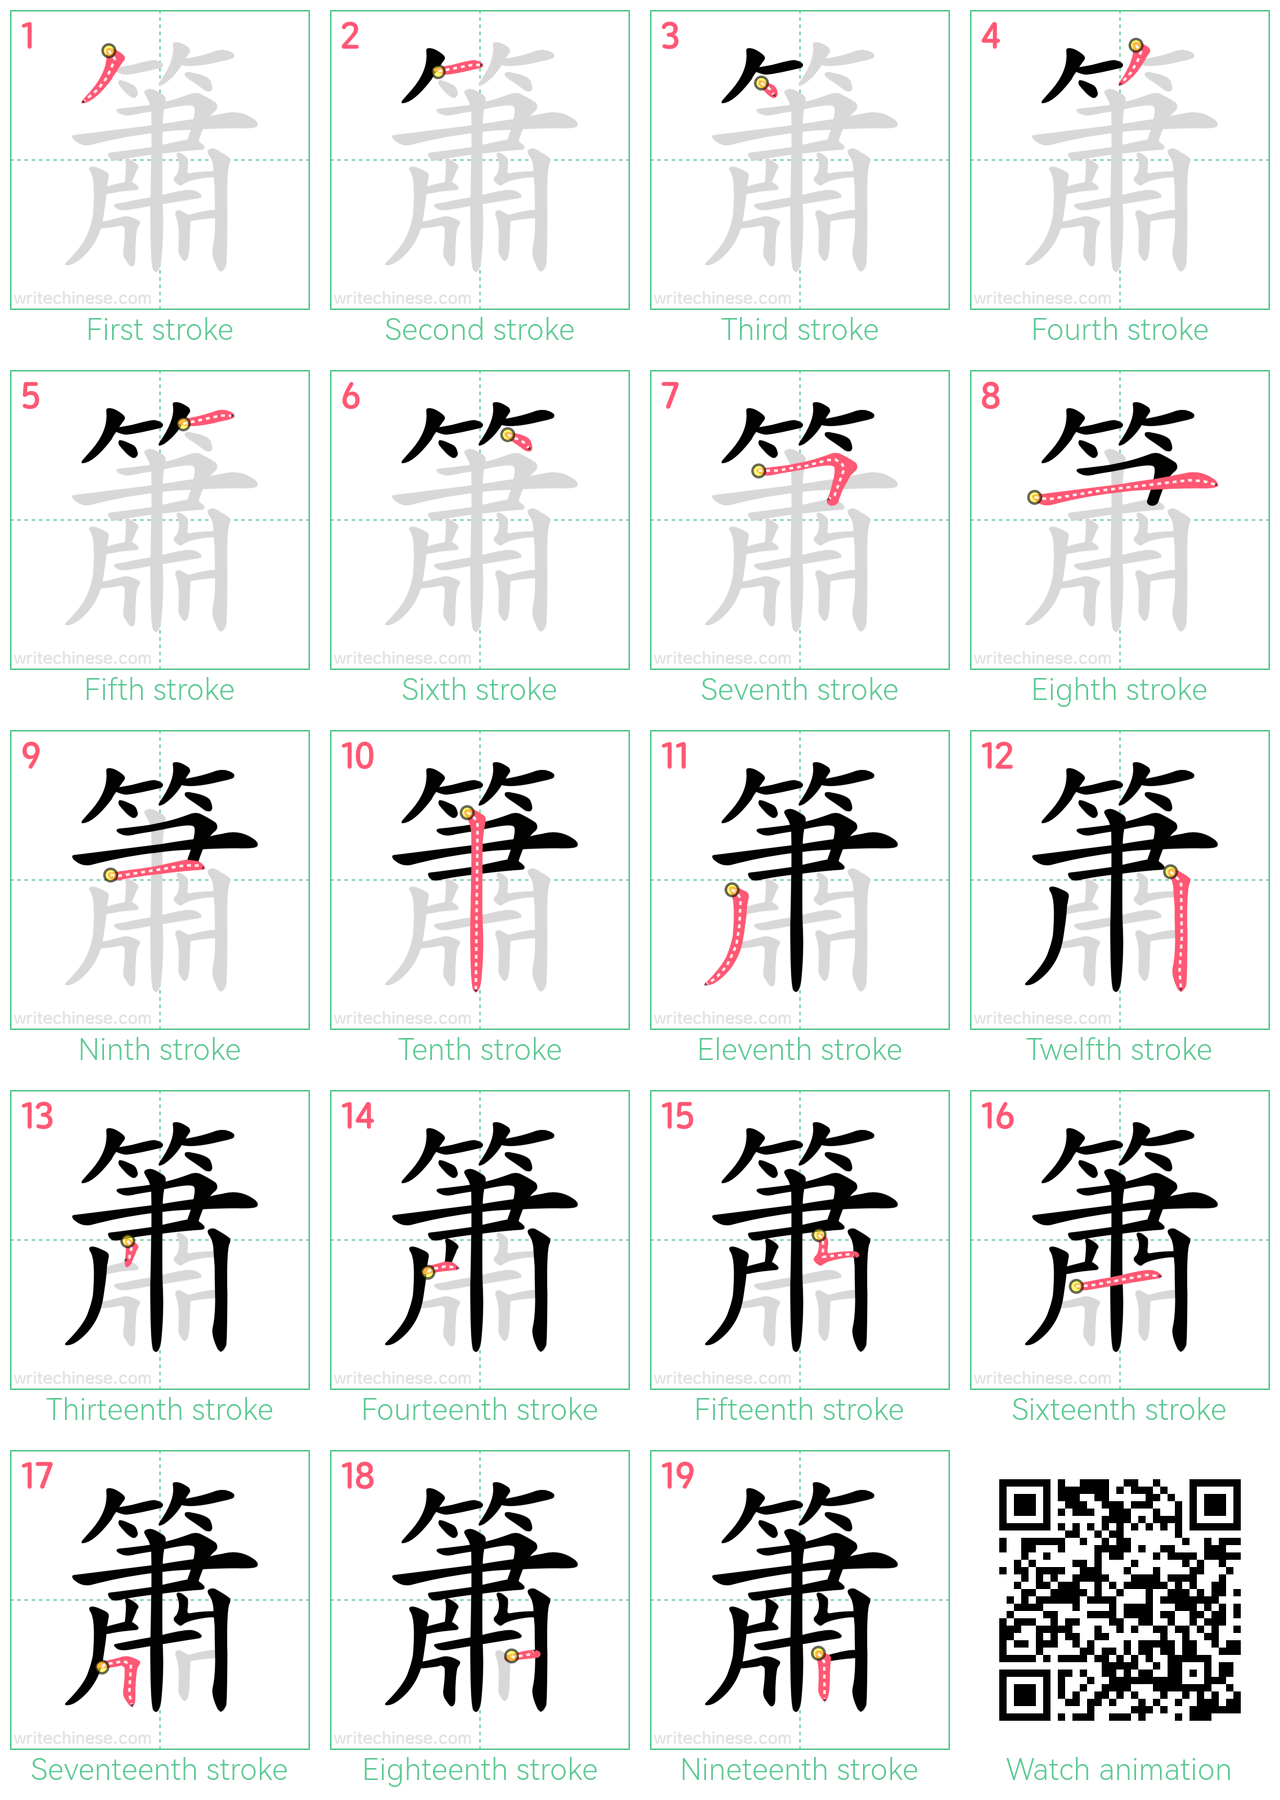 簫 step-by-step stroke order diagrams